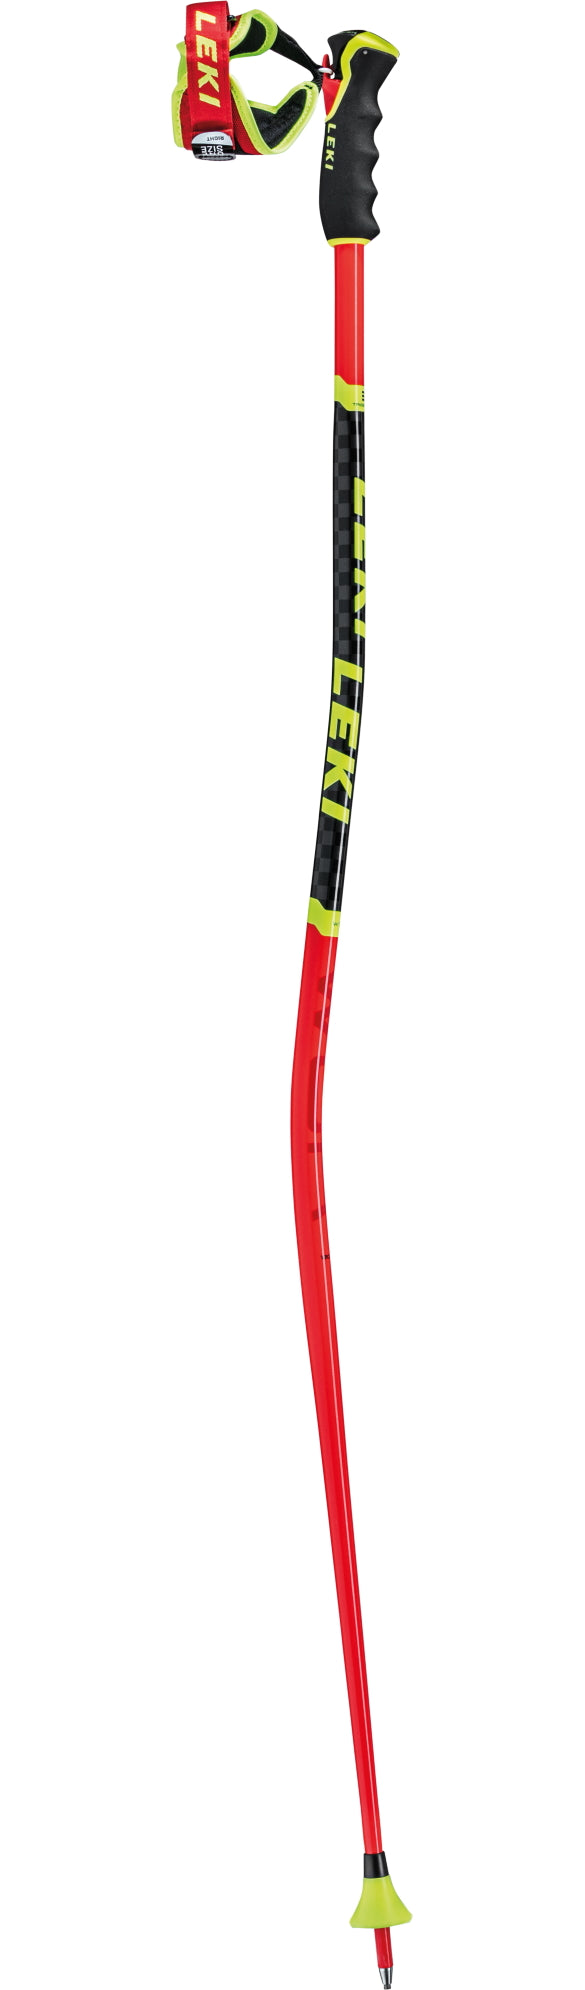 テニスLEKI WORLDCUP LITE GS120cm スキー